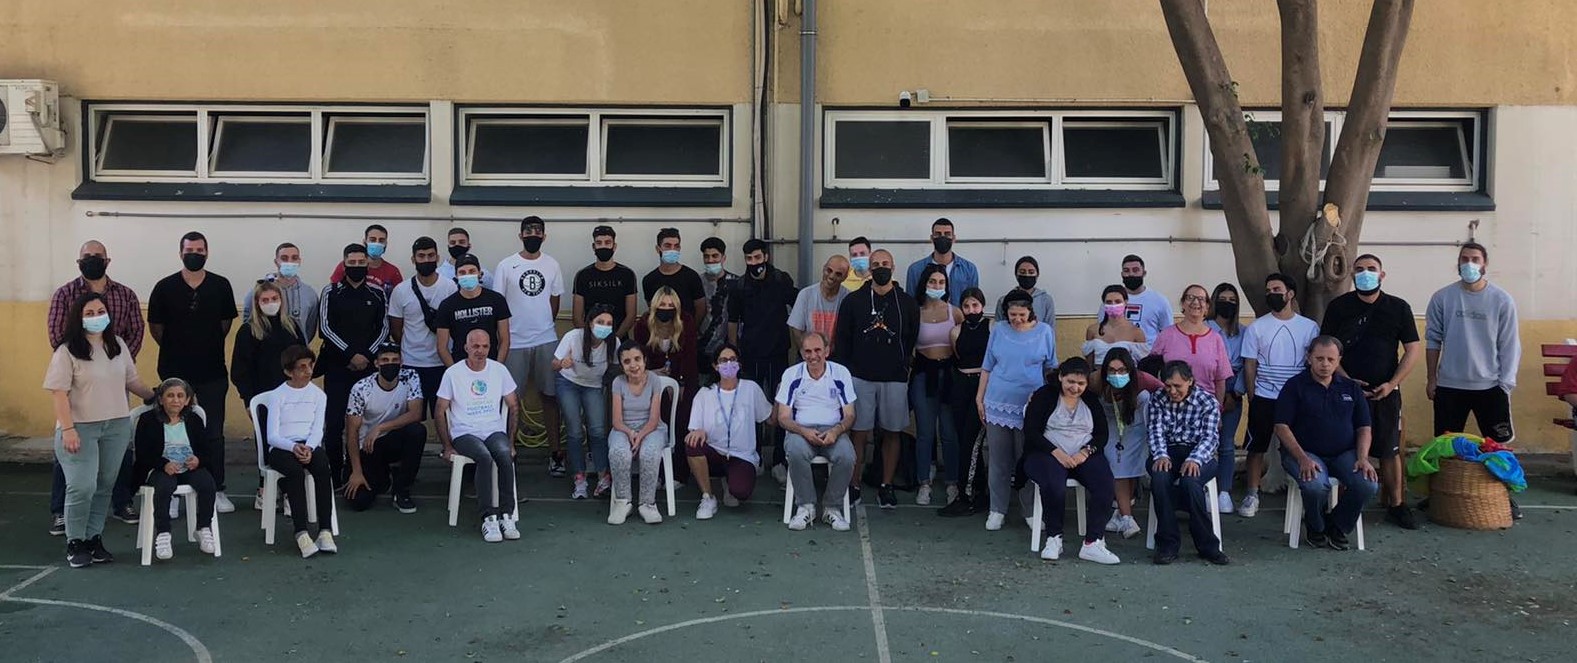 Επίσκεψη φοιτητών Αθλητικής Επιστήμης και Φυσικής Αγωγής του Ευρωπαϊκού Πανεπιστημίου Κύπρου στον Οργανισμό Άγιος Στέφανος στη Λεμεσό